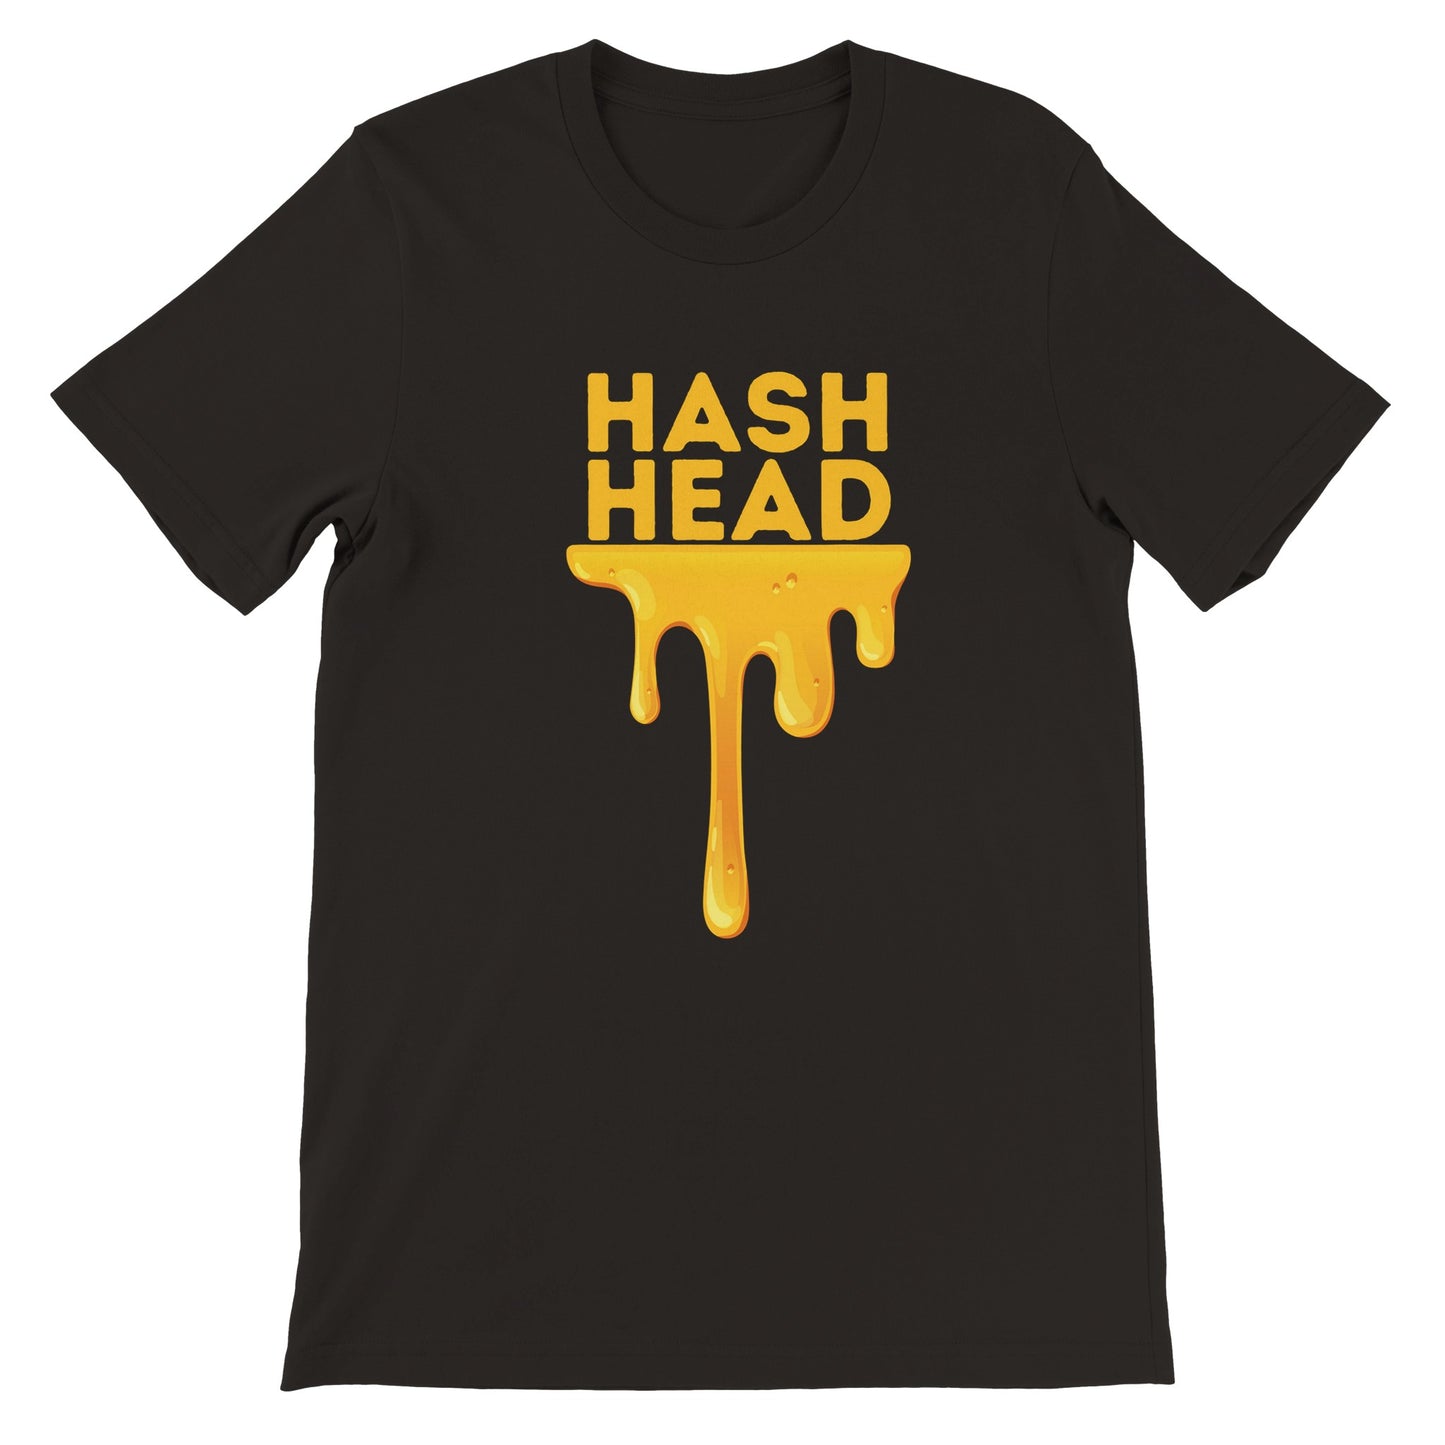 HASH HEAD T-shirt dankweedtees